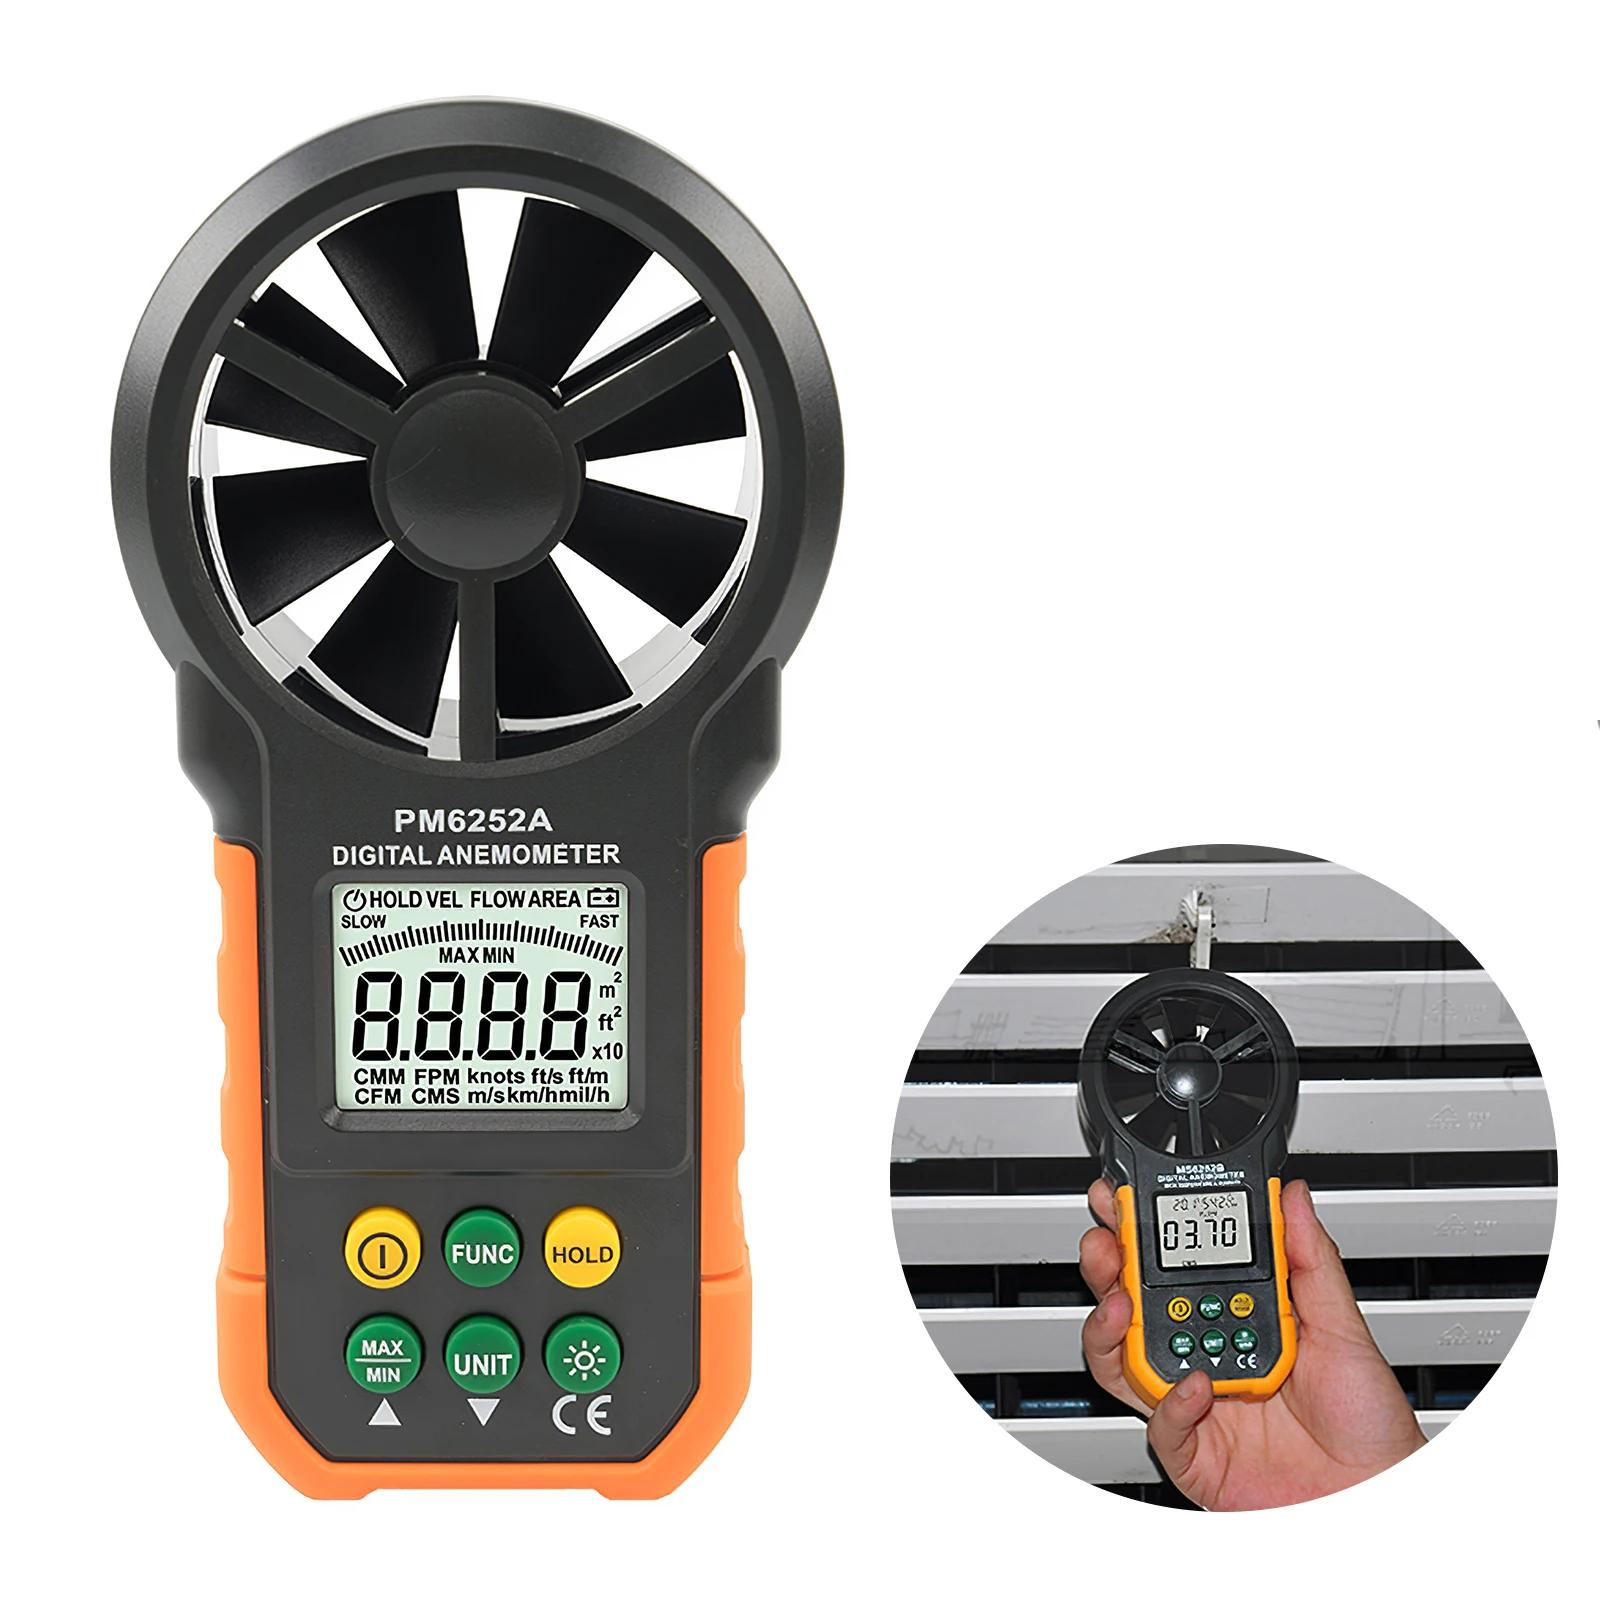 

Цифровой анемометр PEAKMETER PM6252A, ручной измеритель скорости ветра для измерения детской скорости, температуры и охлаждения ветром